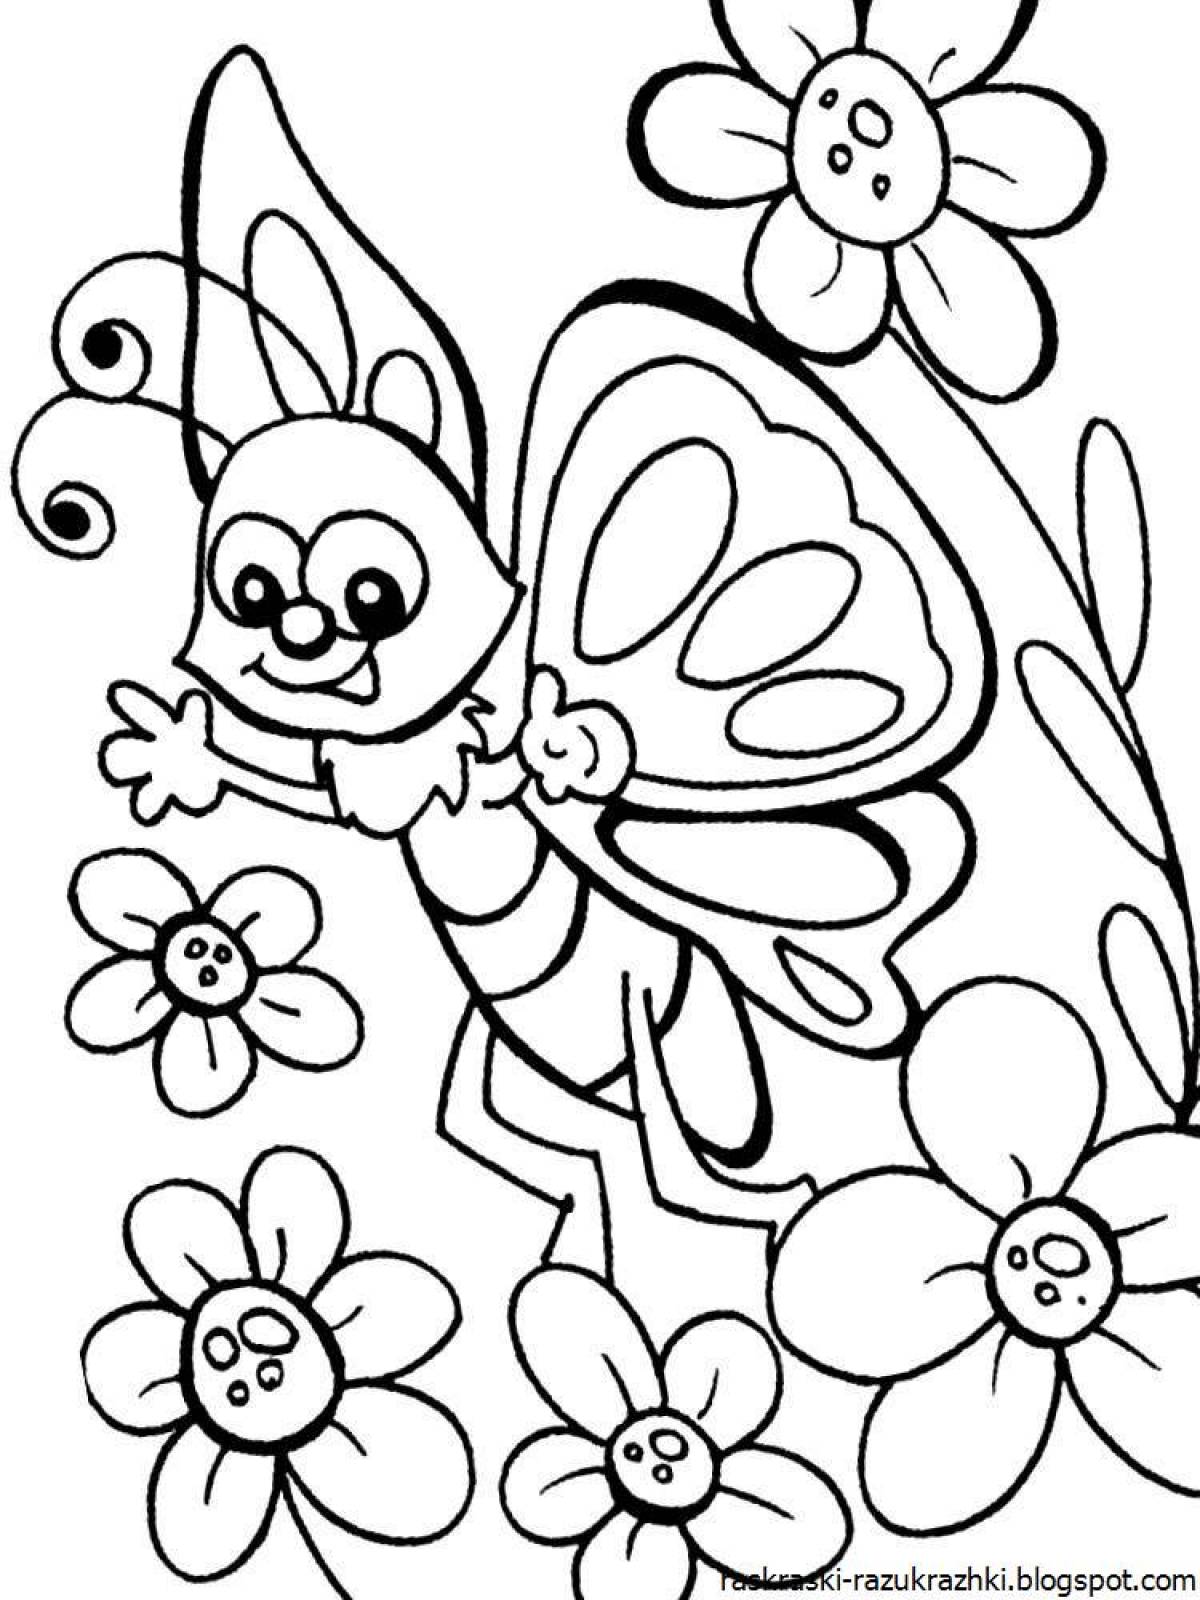 Рисунки для 7 лет. Раскраска бабочки для детей 5-6 лет. Бабочки для раскрашивания детям. Бабочка раскраска для детей 4-5 лет. Красивые раскраски для детей 5 лет.